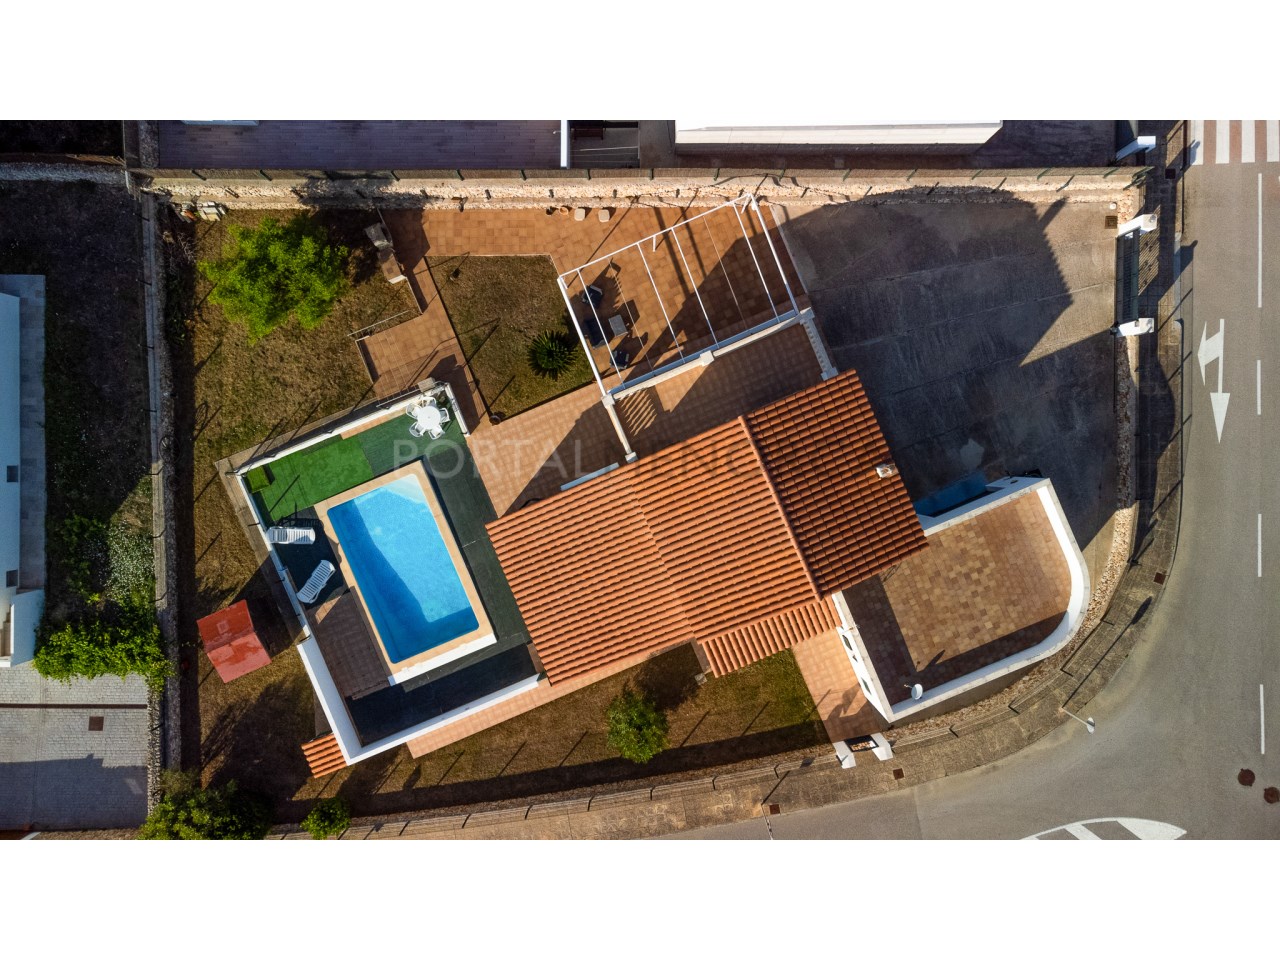 Casa Menorquina con piscina y garaje en Mercadal